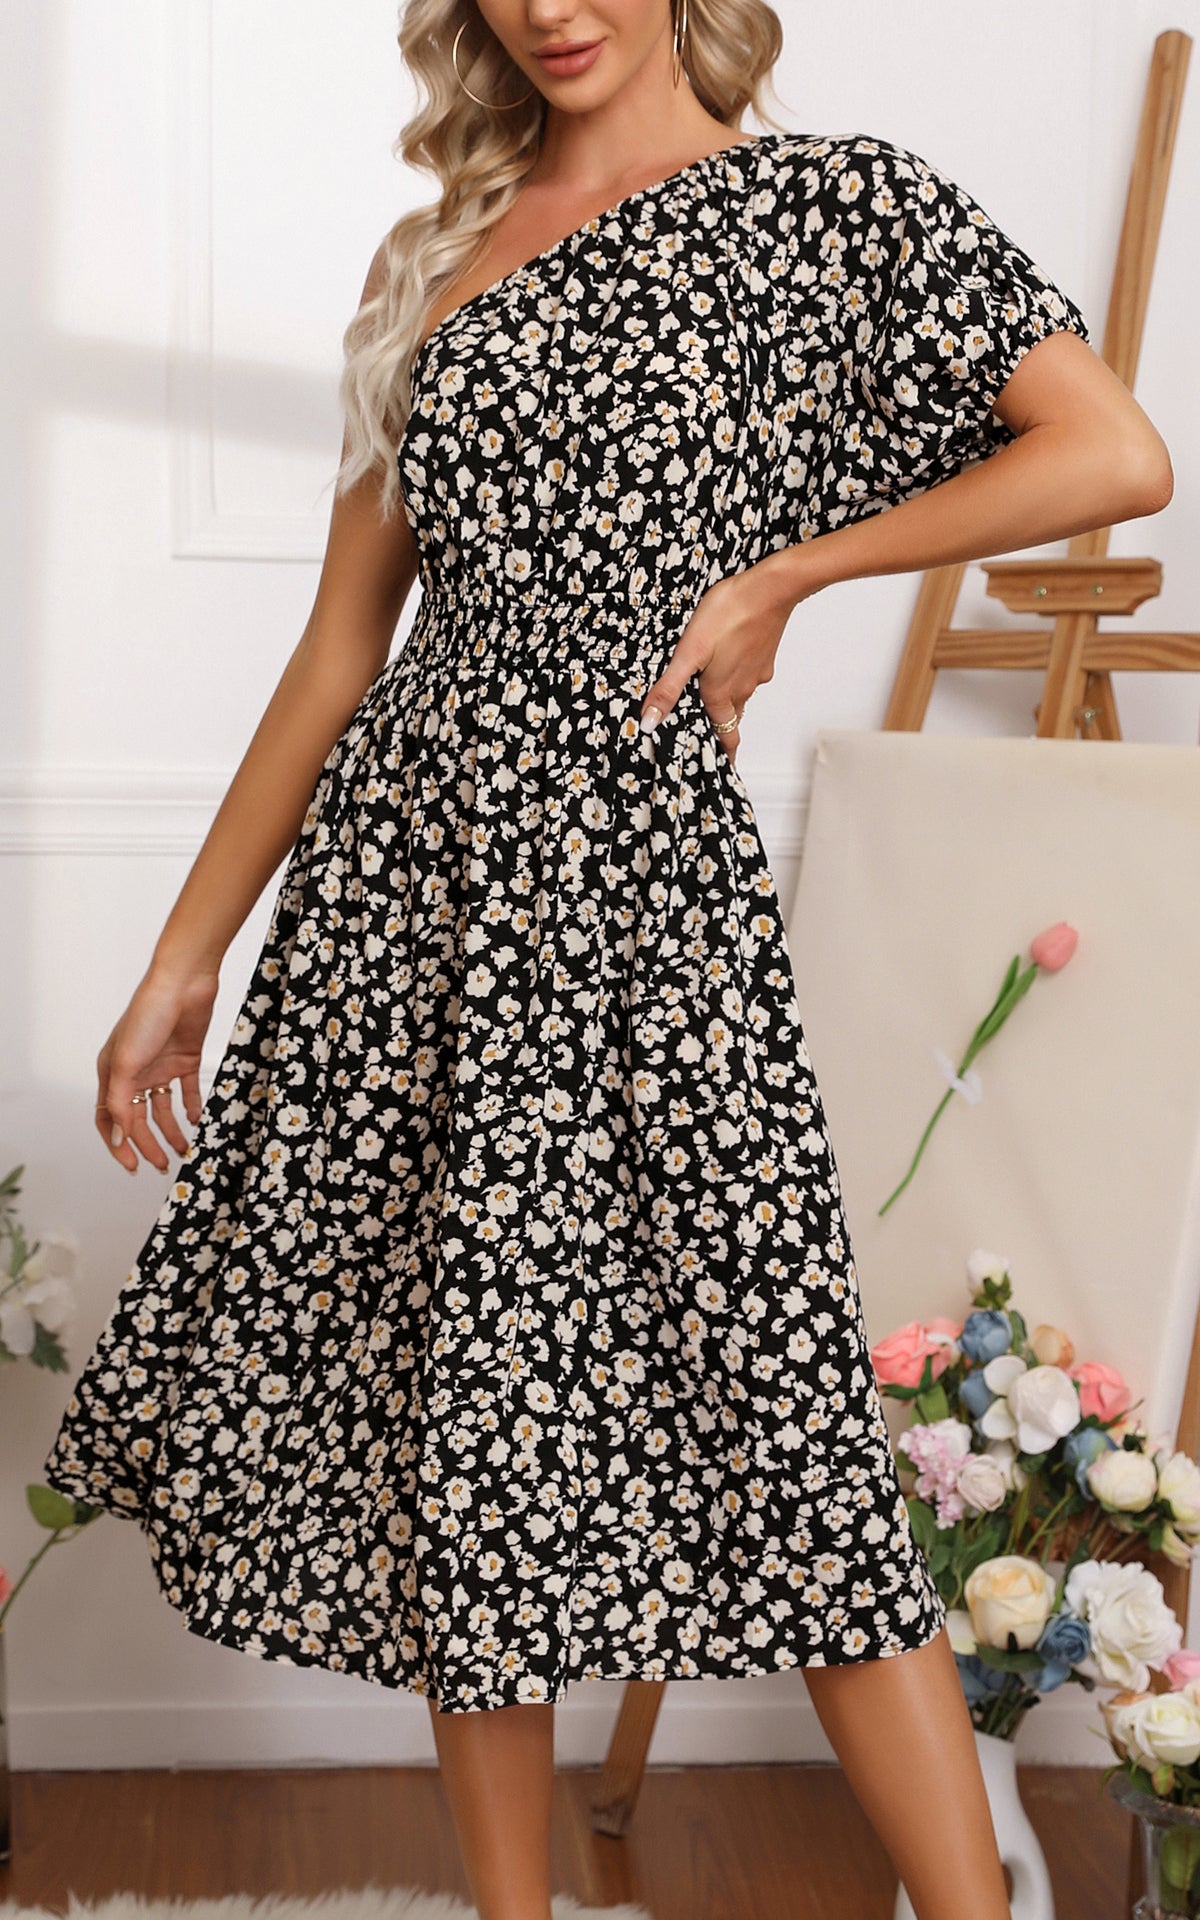 Summer Floral Midi Sundresses - One Shoulder Short Sleeve Backless